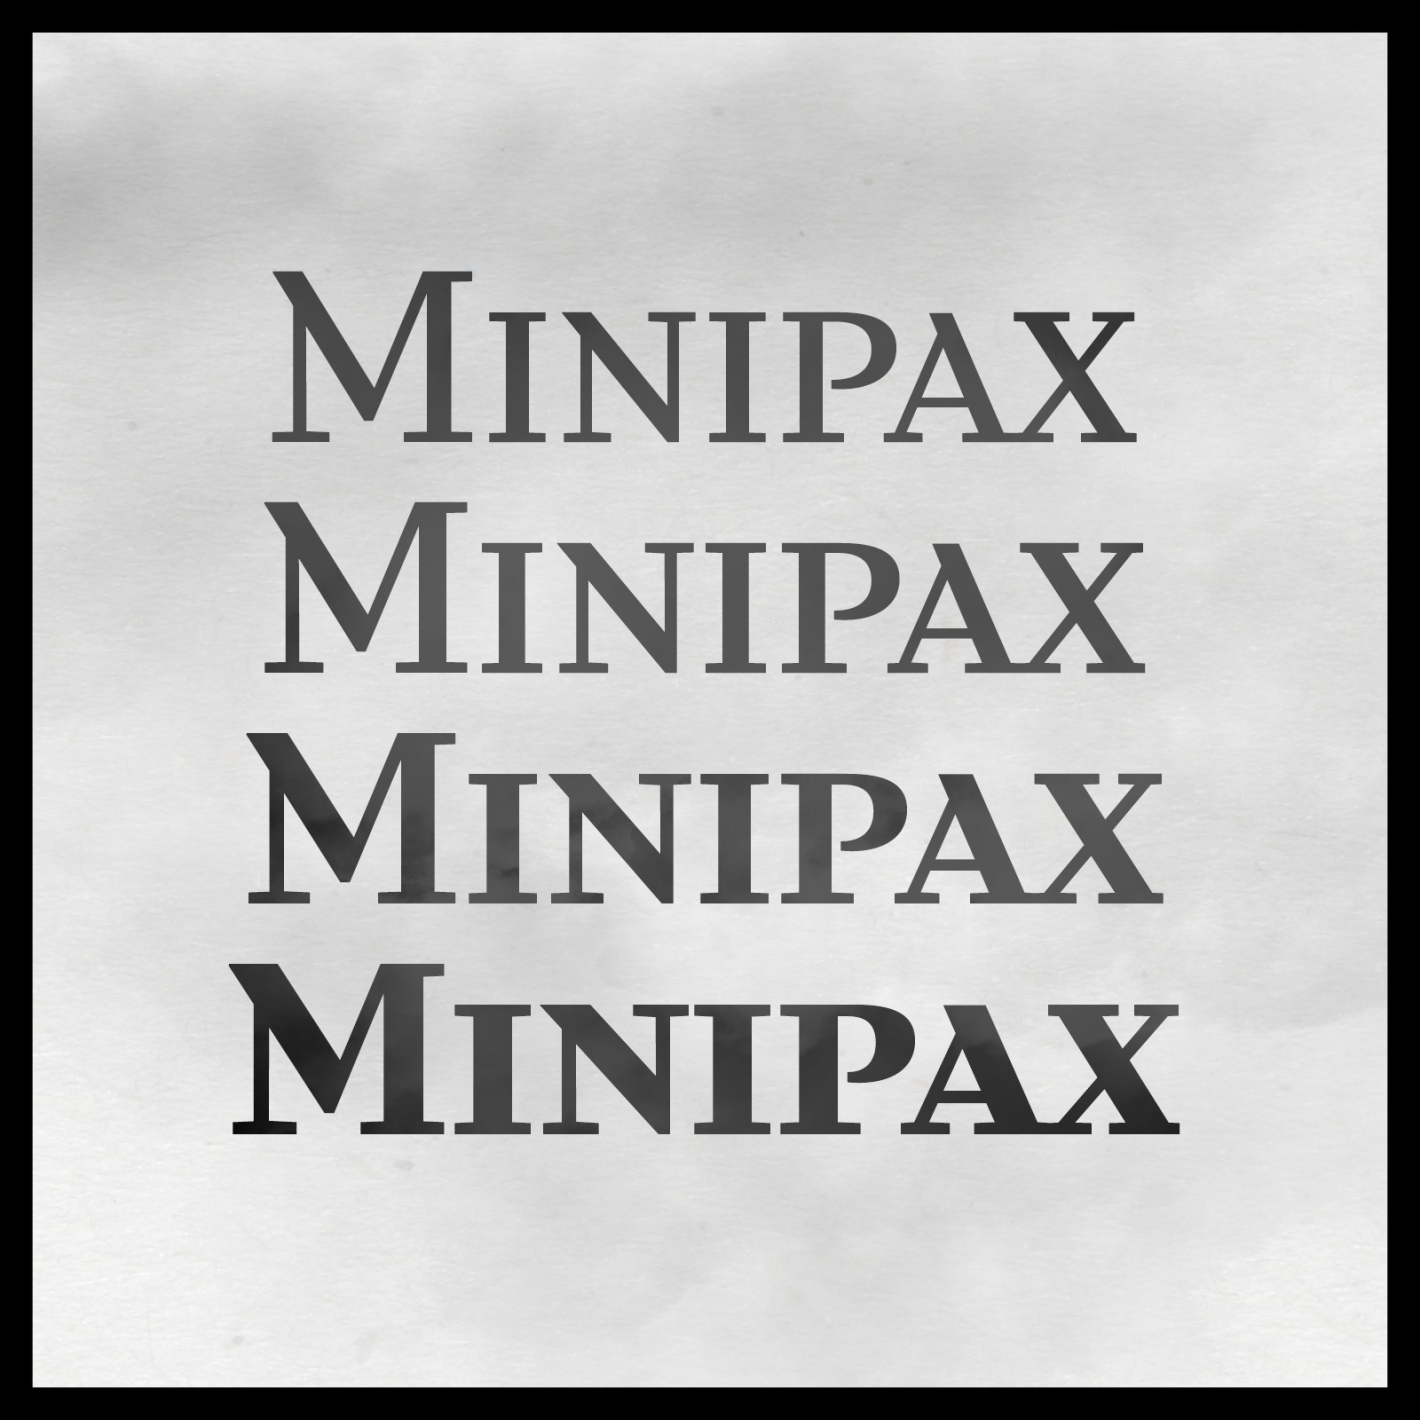 MINIPAX